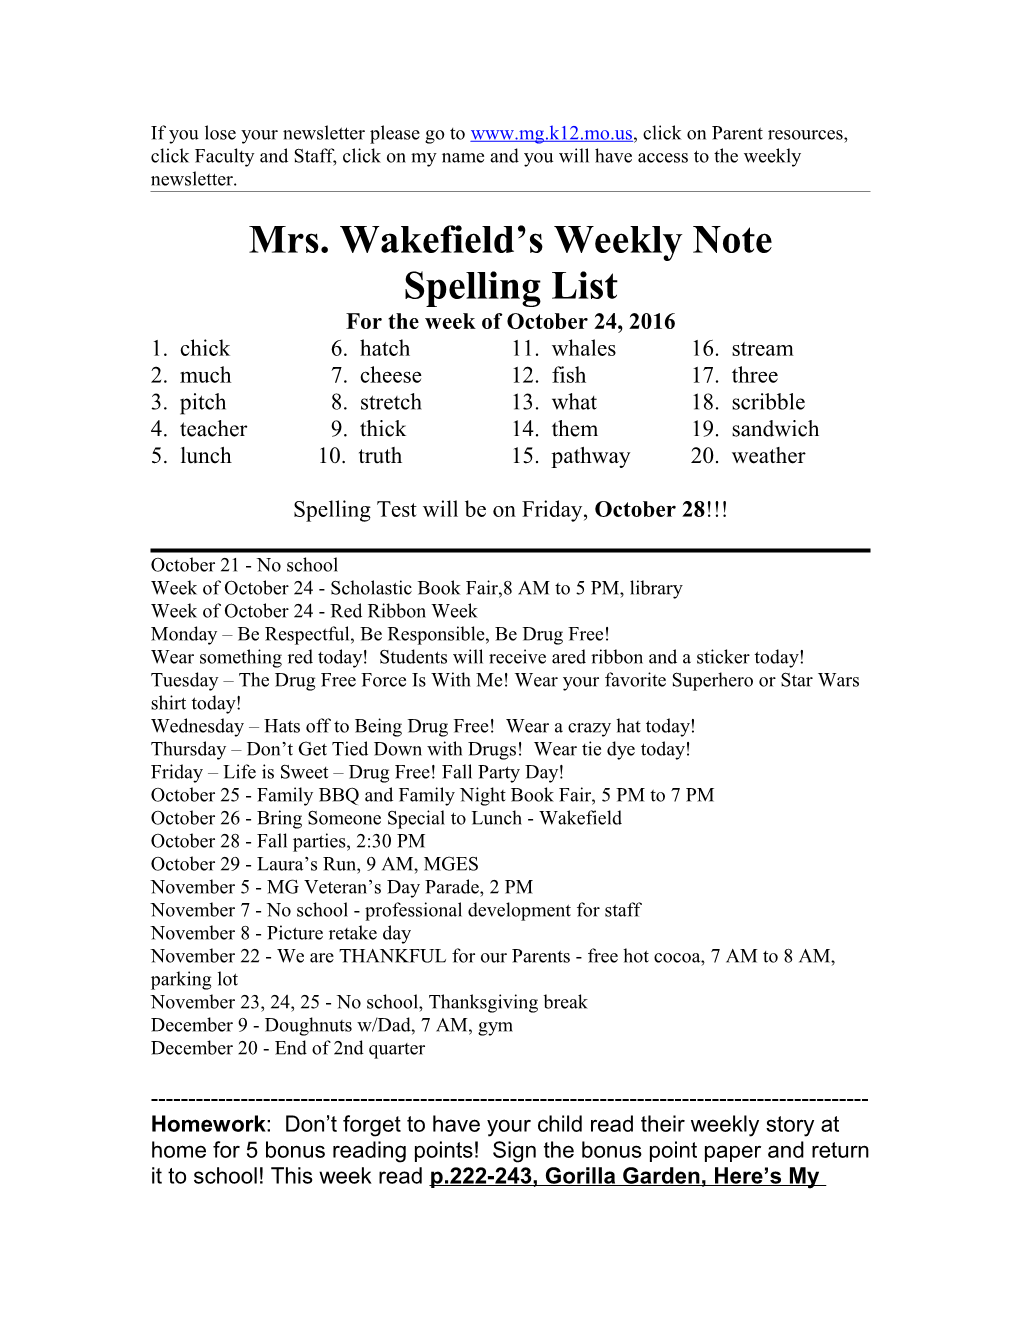 Mrs. Wakefield S Weekly Note